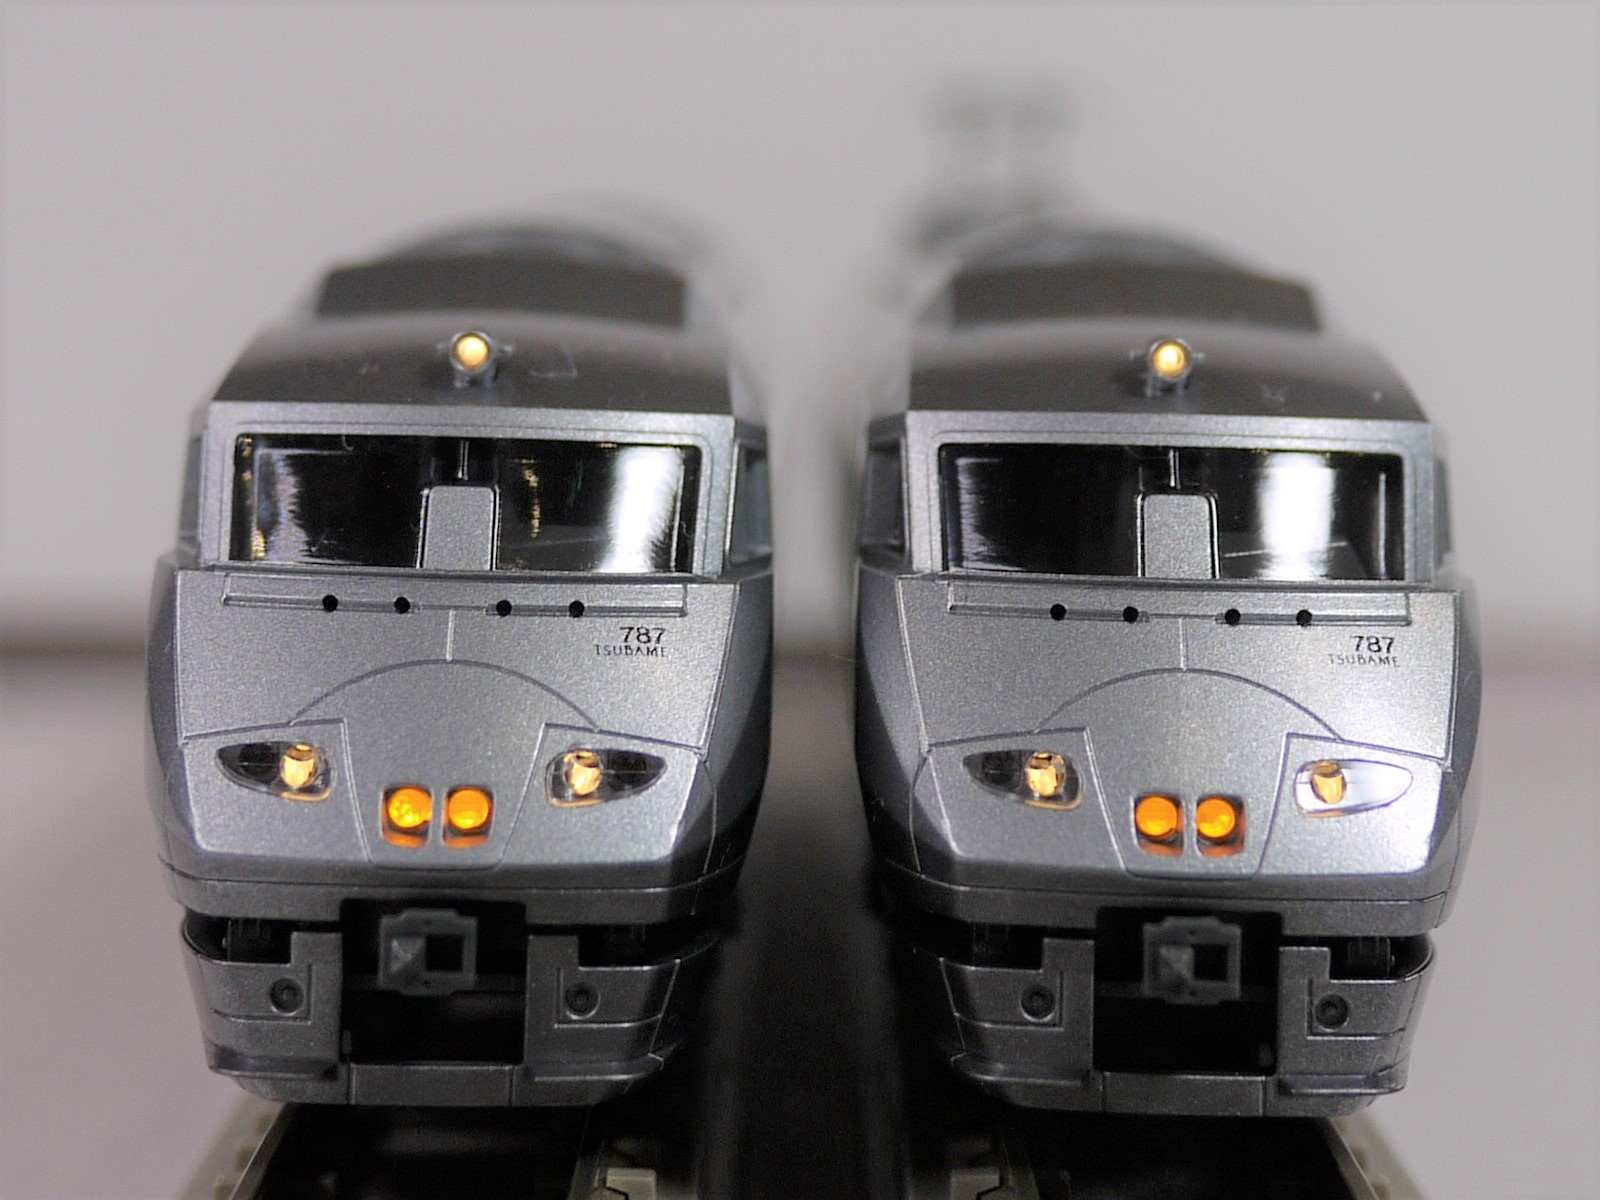 【正規保証】Nゲージ KATO 10-1615 787系「つばめ」 9両セット 特急形電車